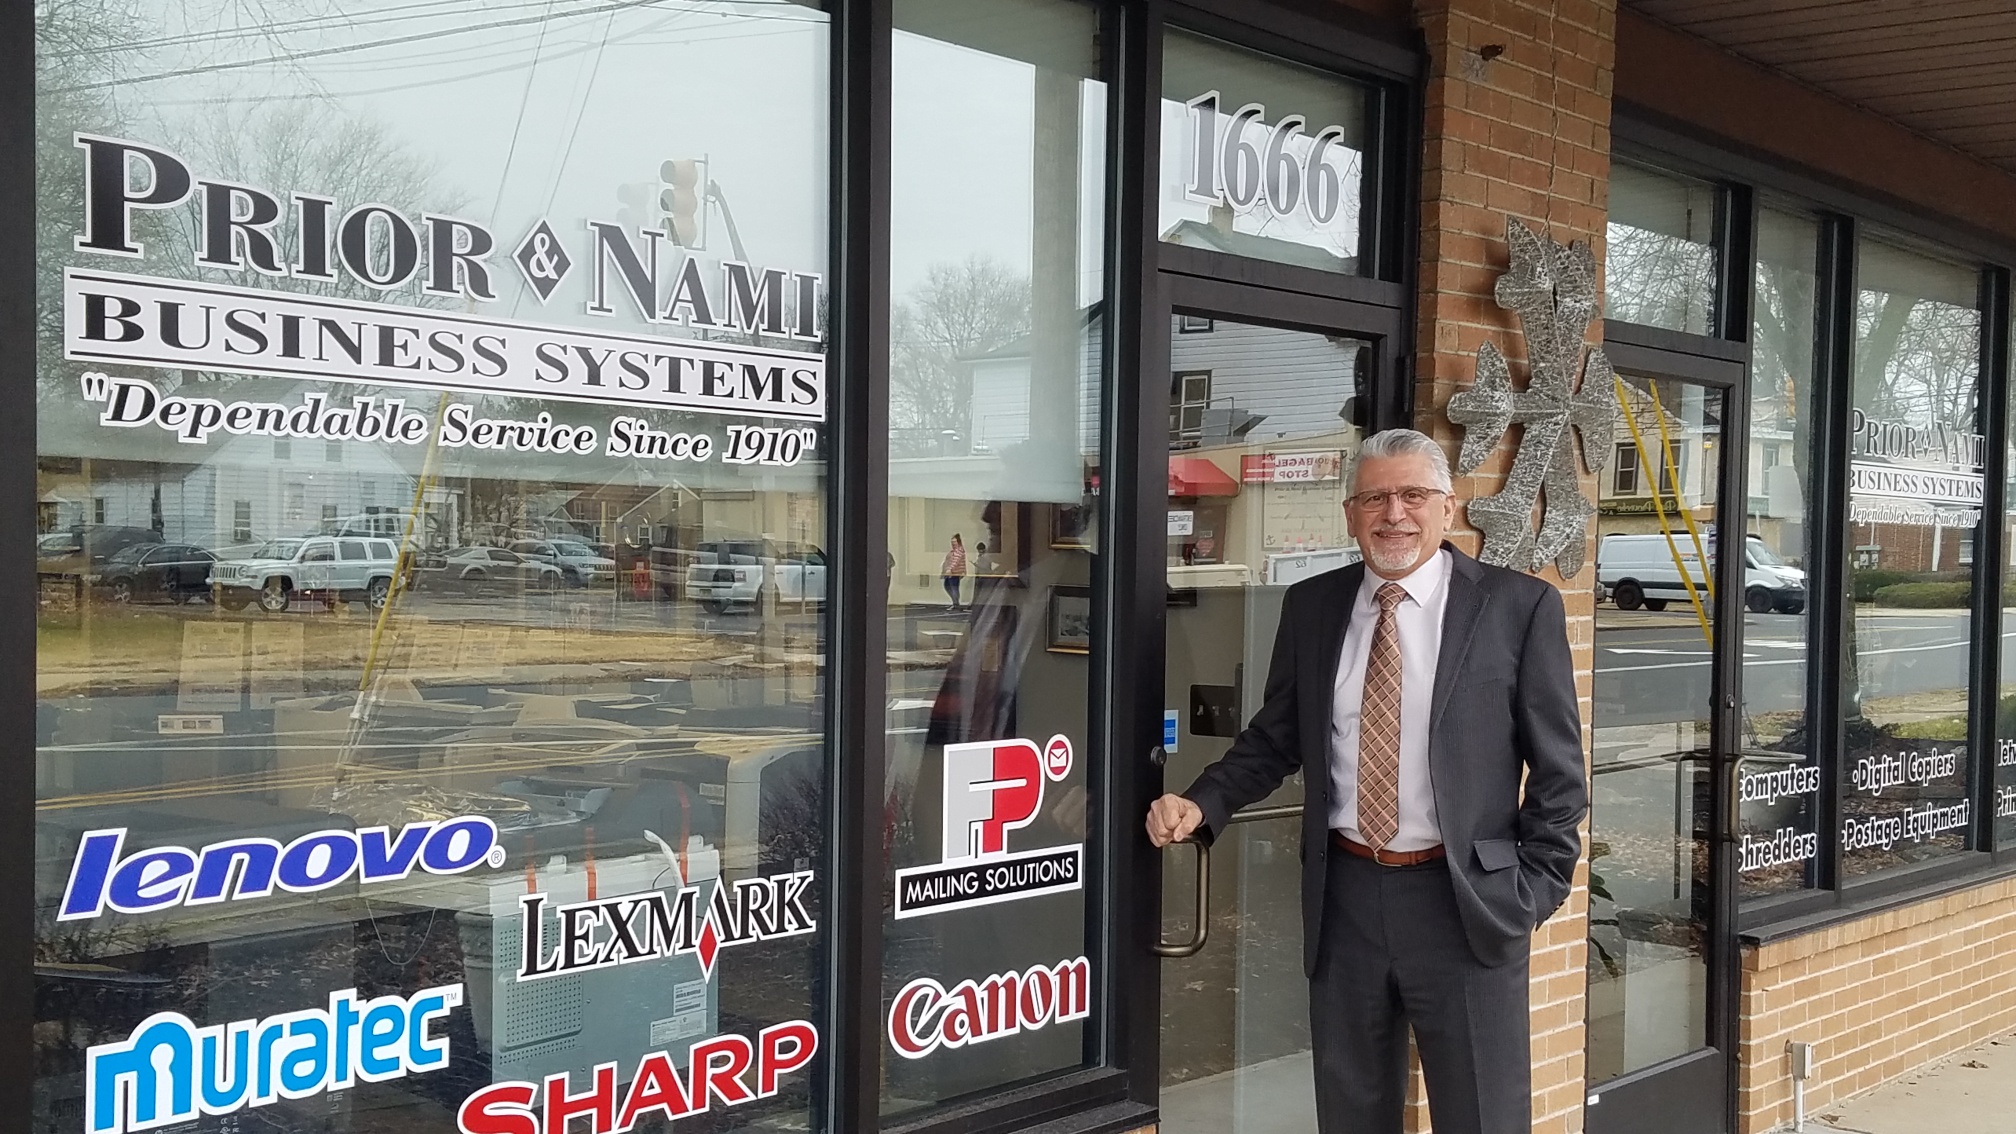 Dealer Check-in: Tony Nami, President, Prior & Nami Business Systems, Hamilton, NJ